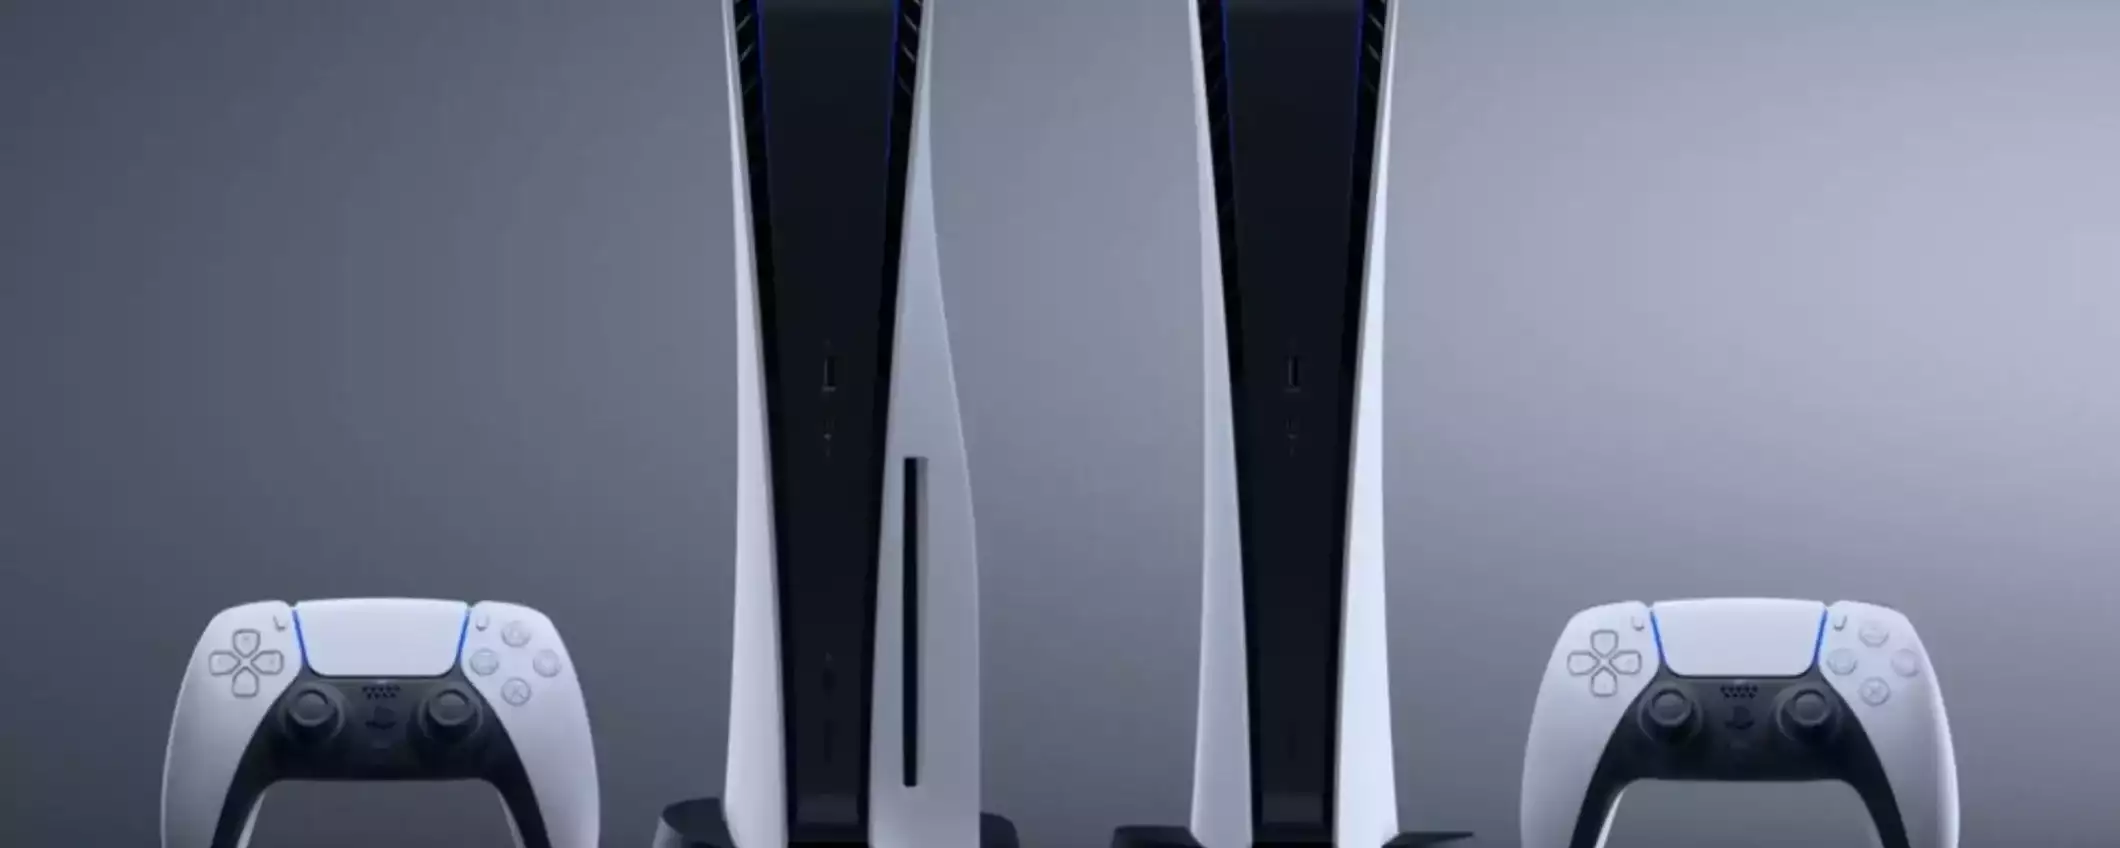 PlayStation 5 Slim con DualSense: OFFERTA a tempo limitato su Amazon